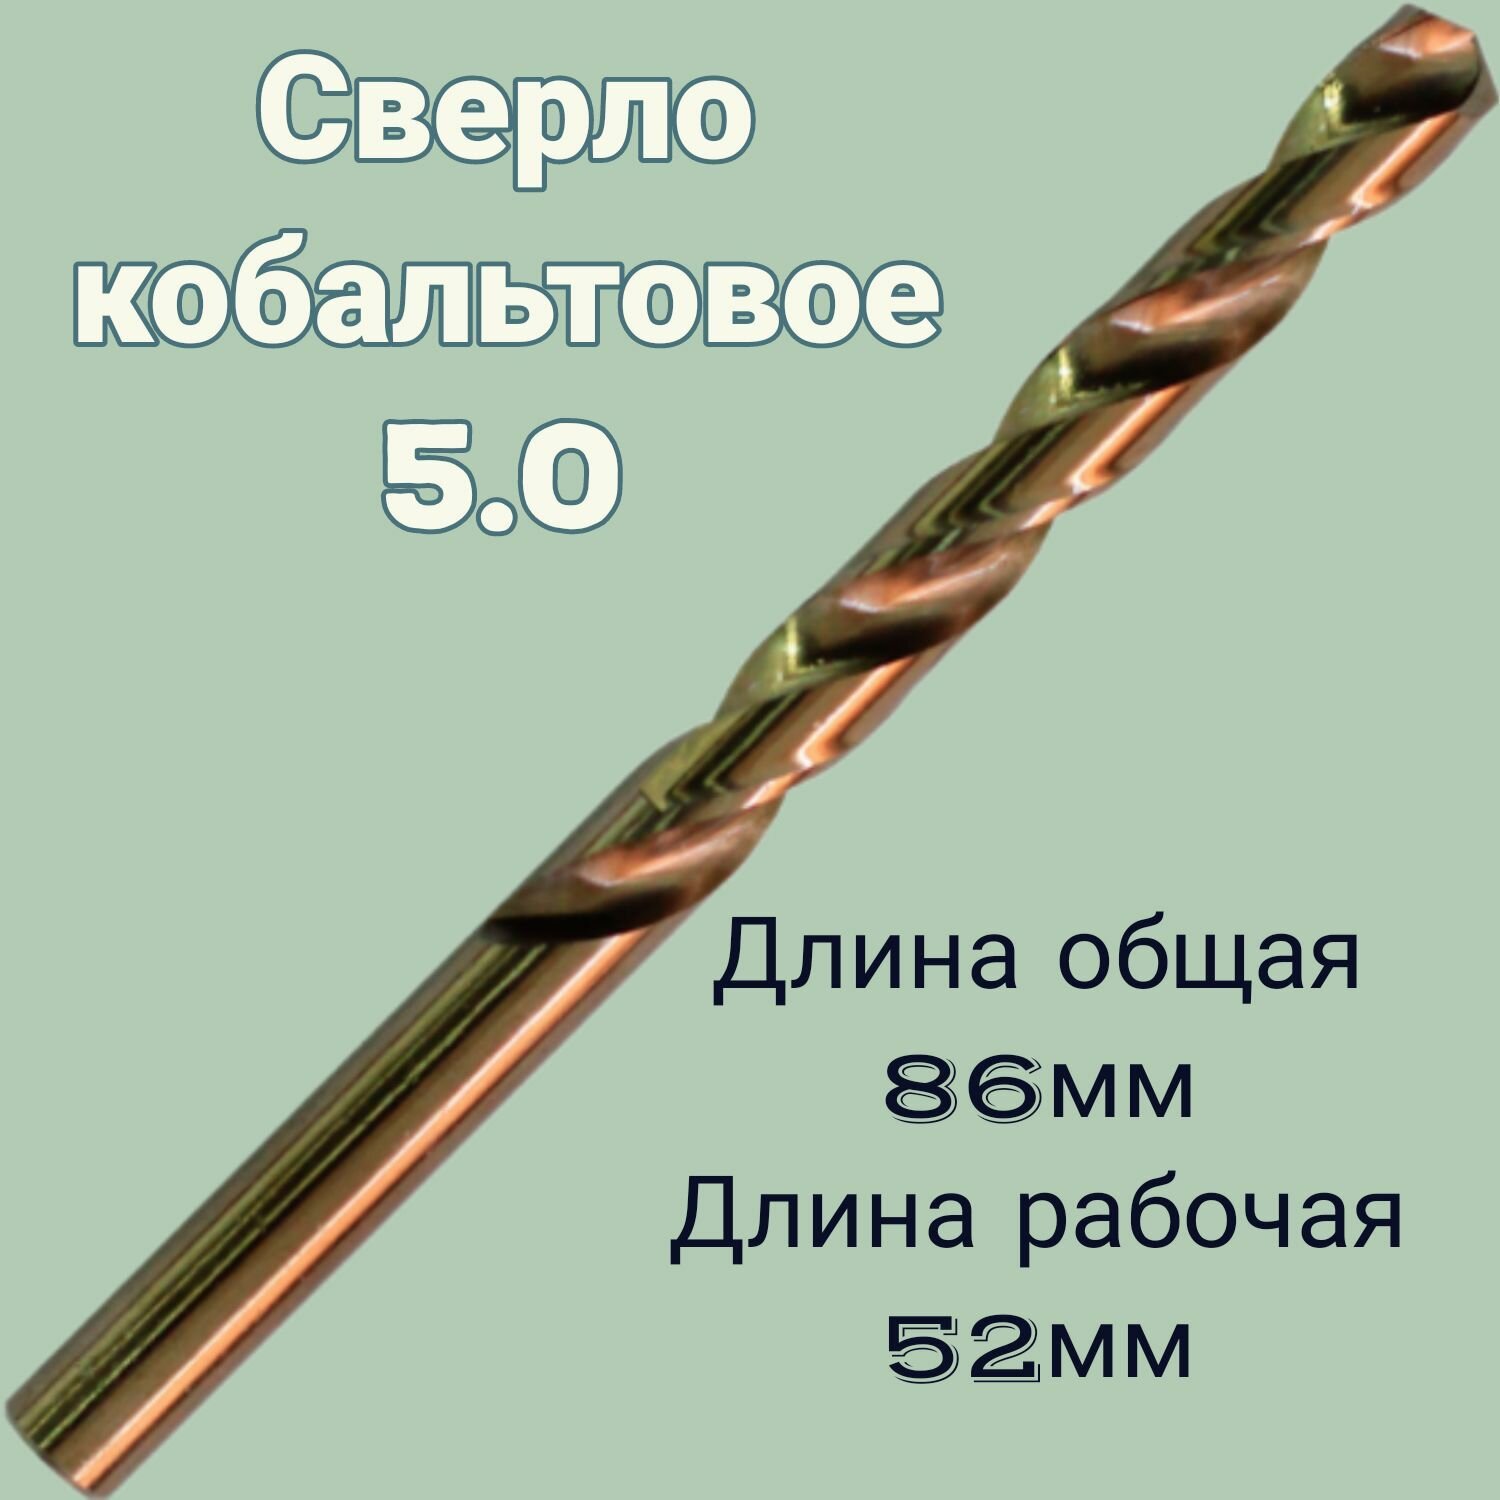 Сверло 50 по металлу ц/х средняя L 86/52 мм кобальт HSS Co 1 шт